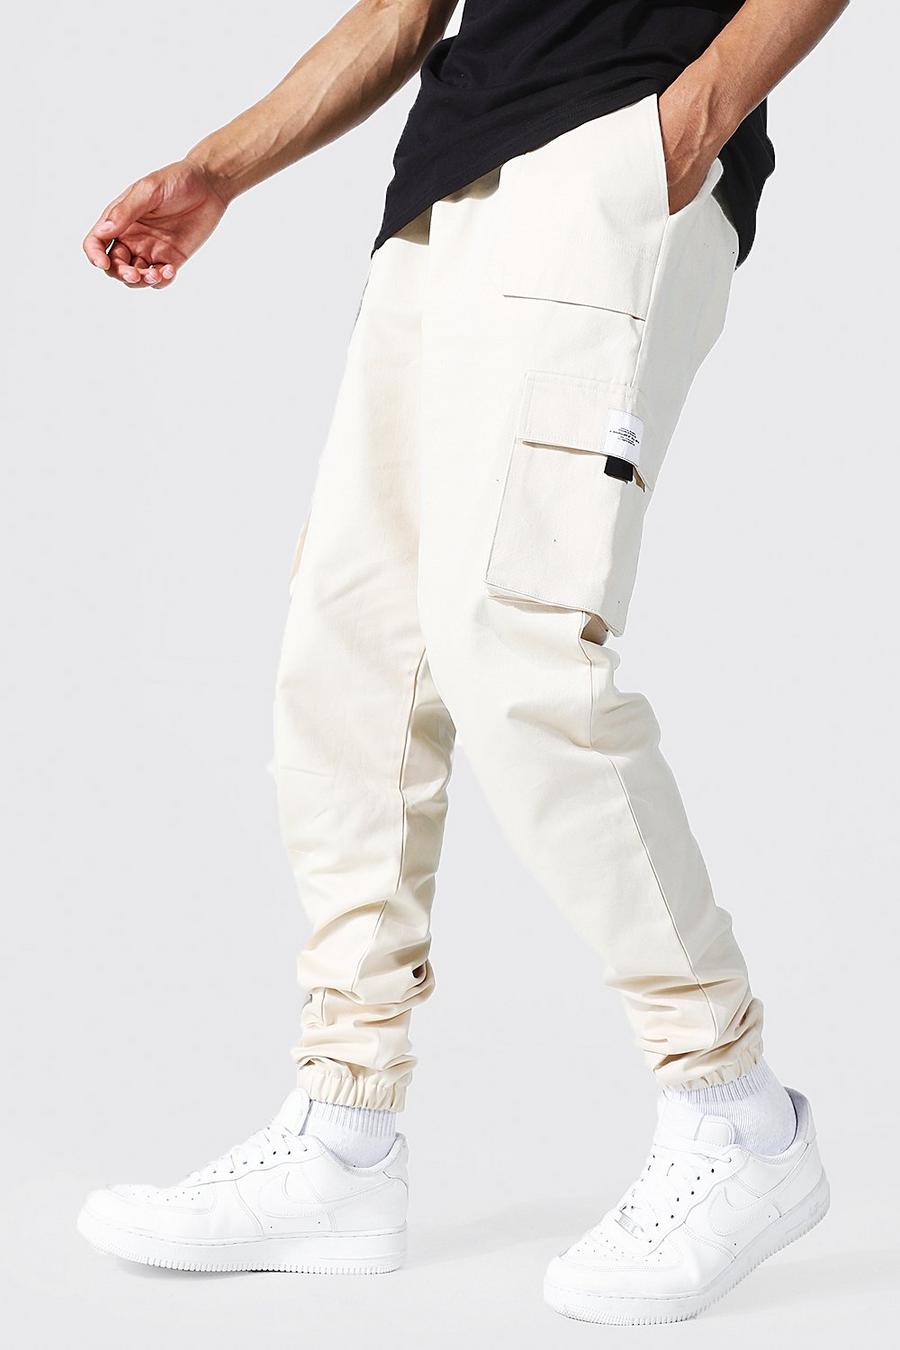 שמנת bianco מכנסי ריצה טוויל דגמ'ח עם חגורה בחזית ותווית לגברים גבוהים